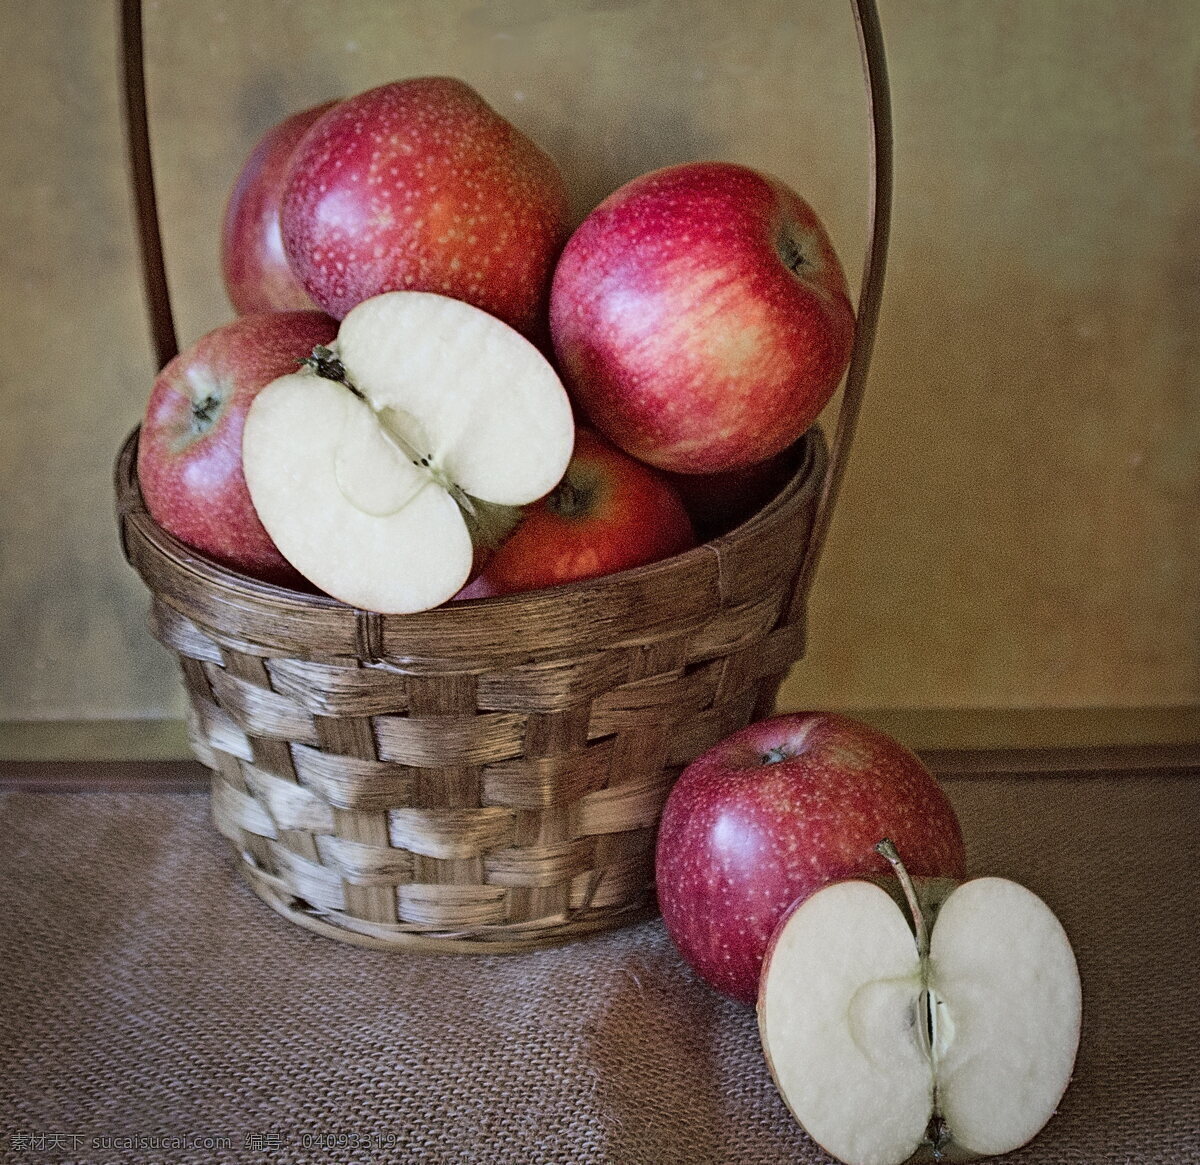 一篮红苹果 红苹果 红富士 苹果 脆甜 水果 鲜果 新鲜 水果篮子 篮子 篮筐 新鲜苹果 新鲜水果 食品 食物 美食 小吃 粮食 零食 美味 好味道 可口 生物世界